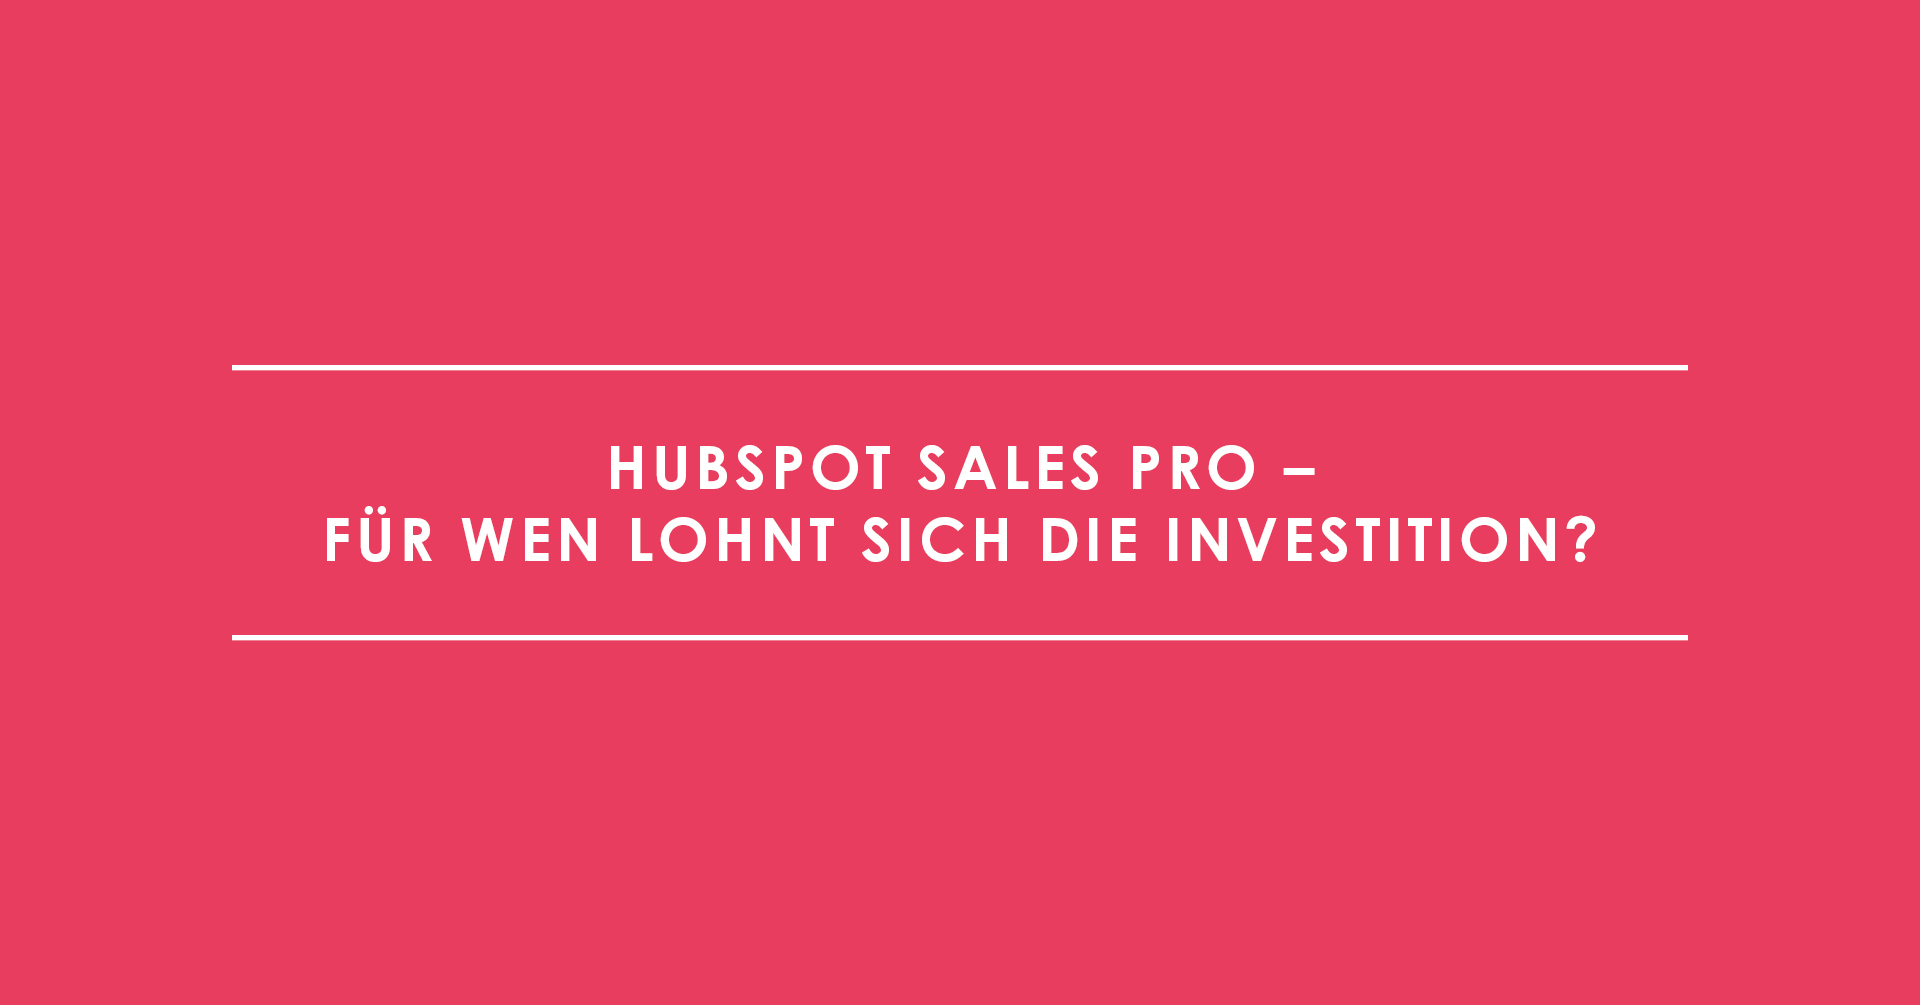 HubSpot Sales Pro – für wen lohnt sich die Investition?